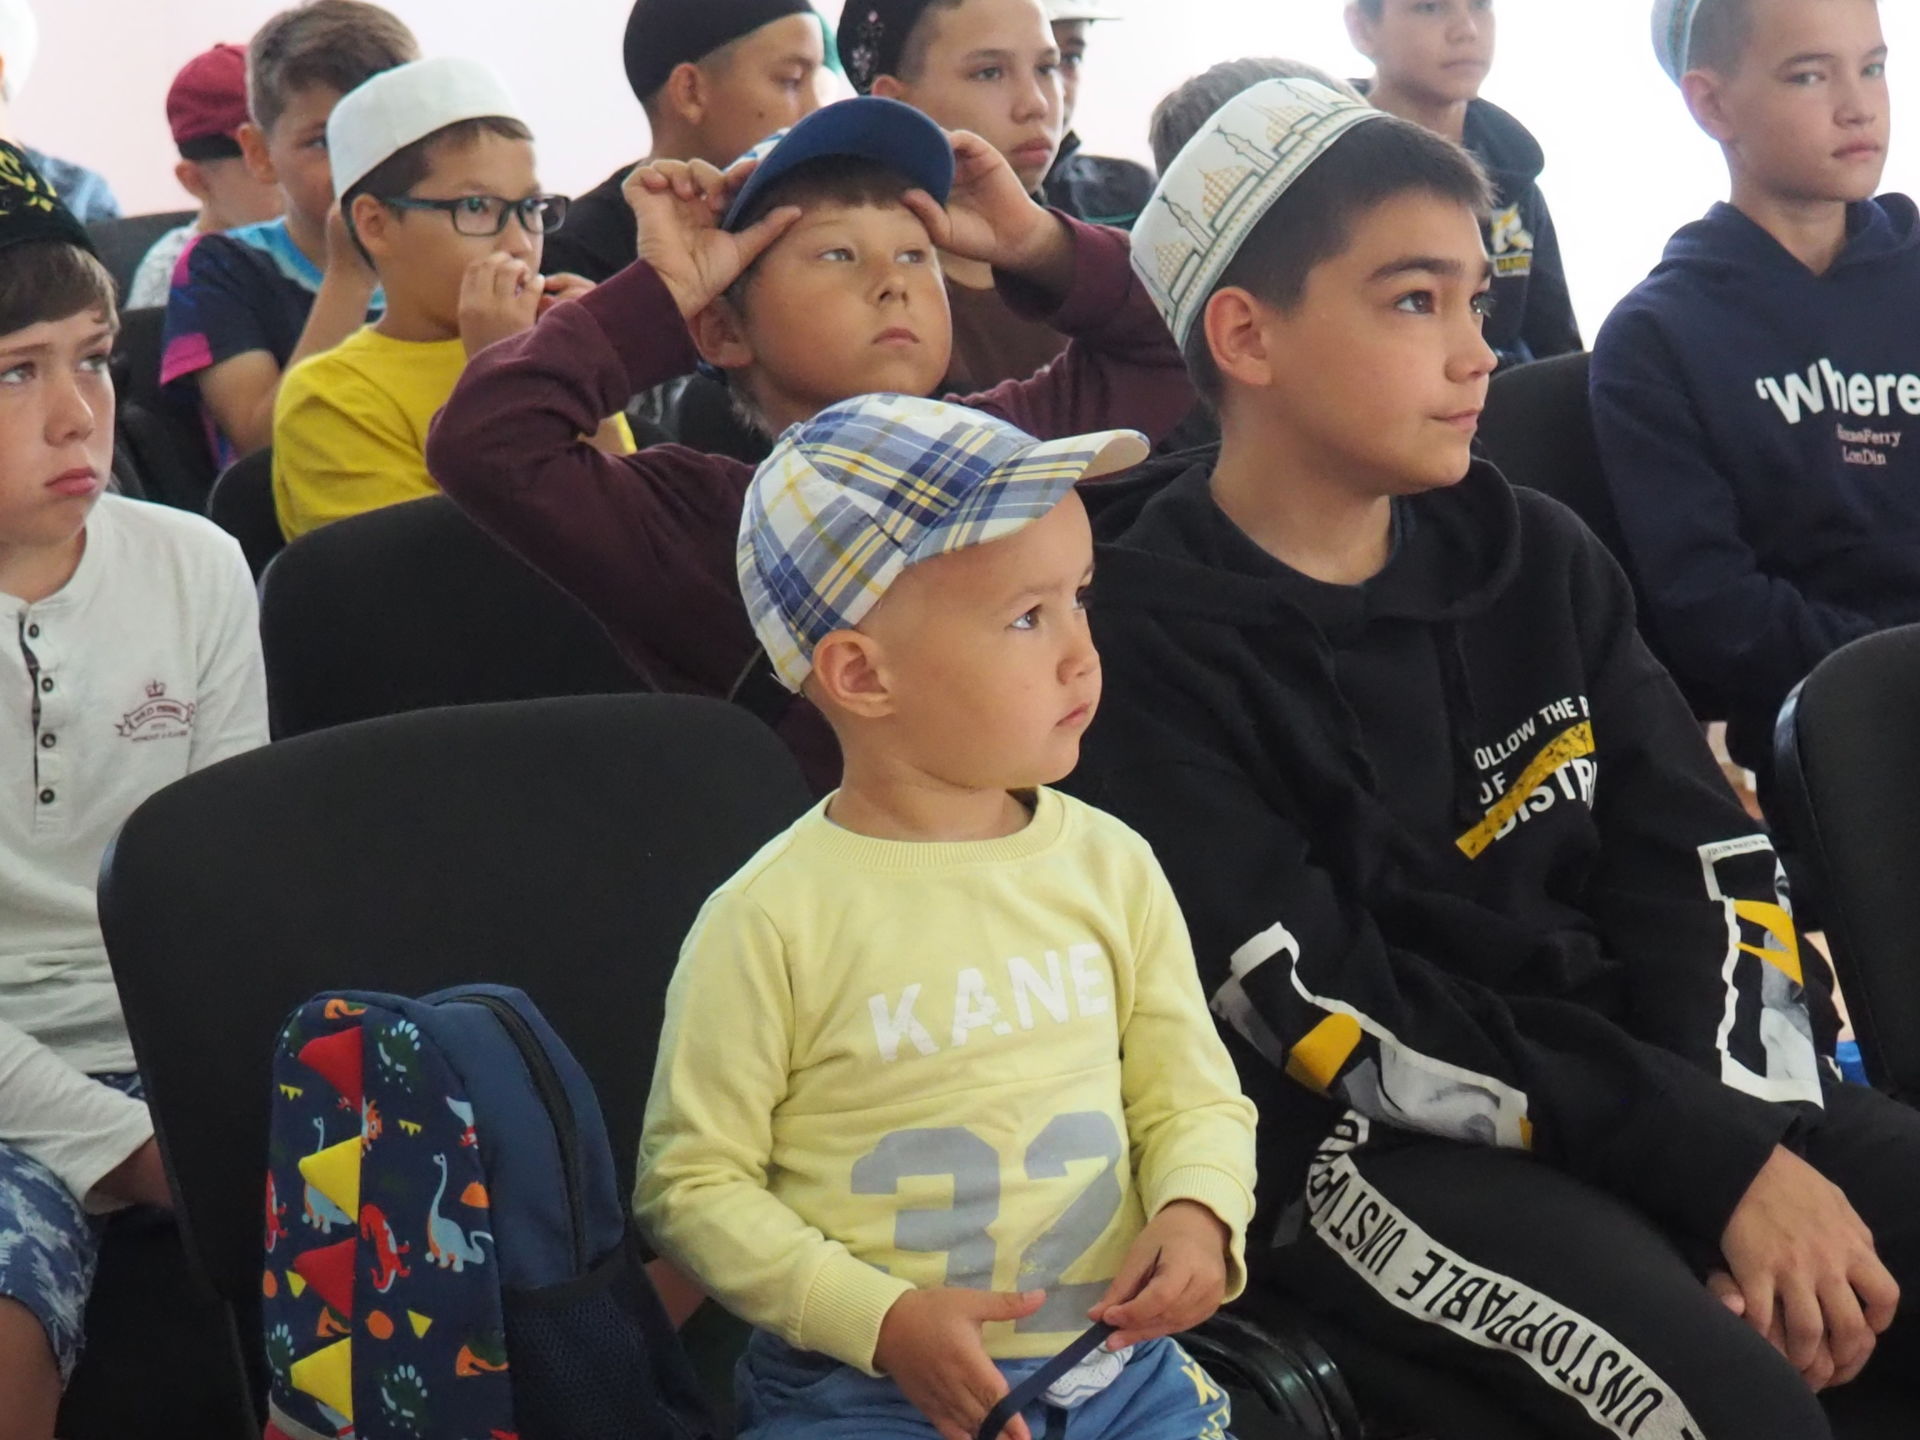 В образовательном центре города Нурлат проходят летние воспитательные курсы для детей